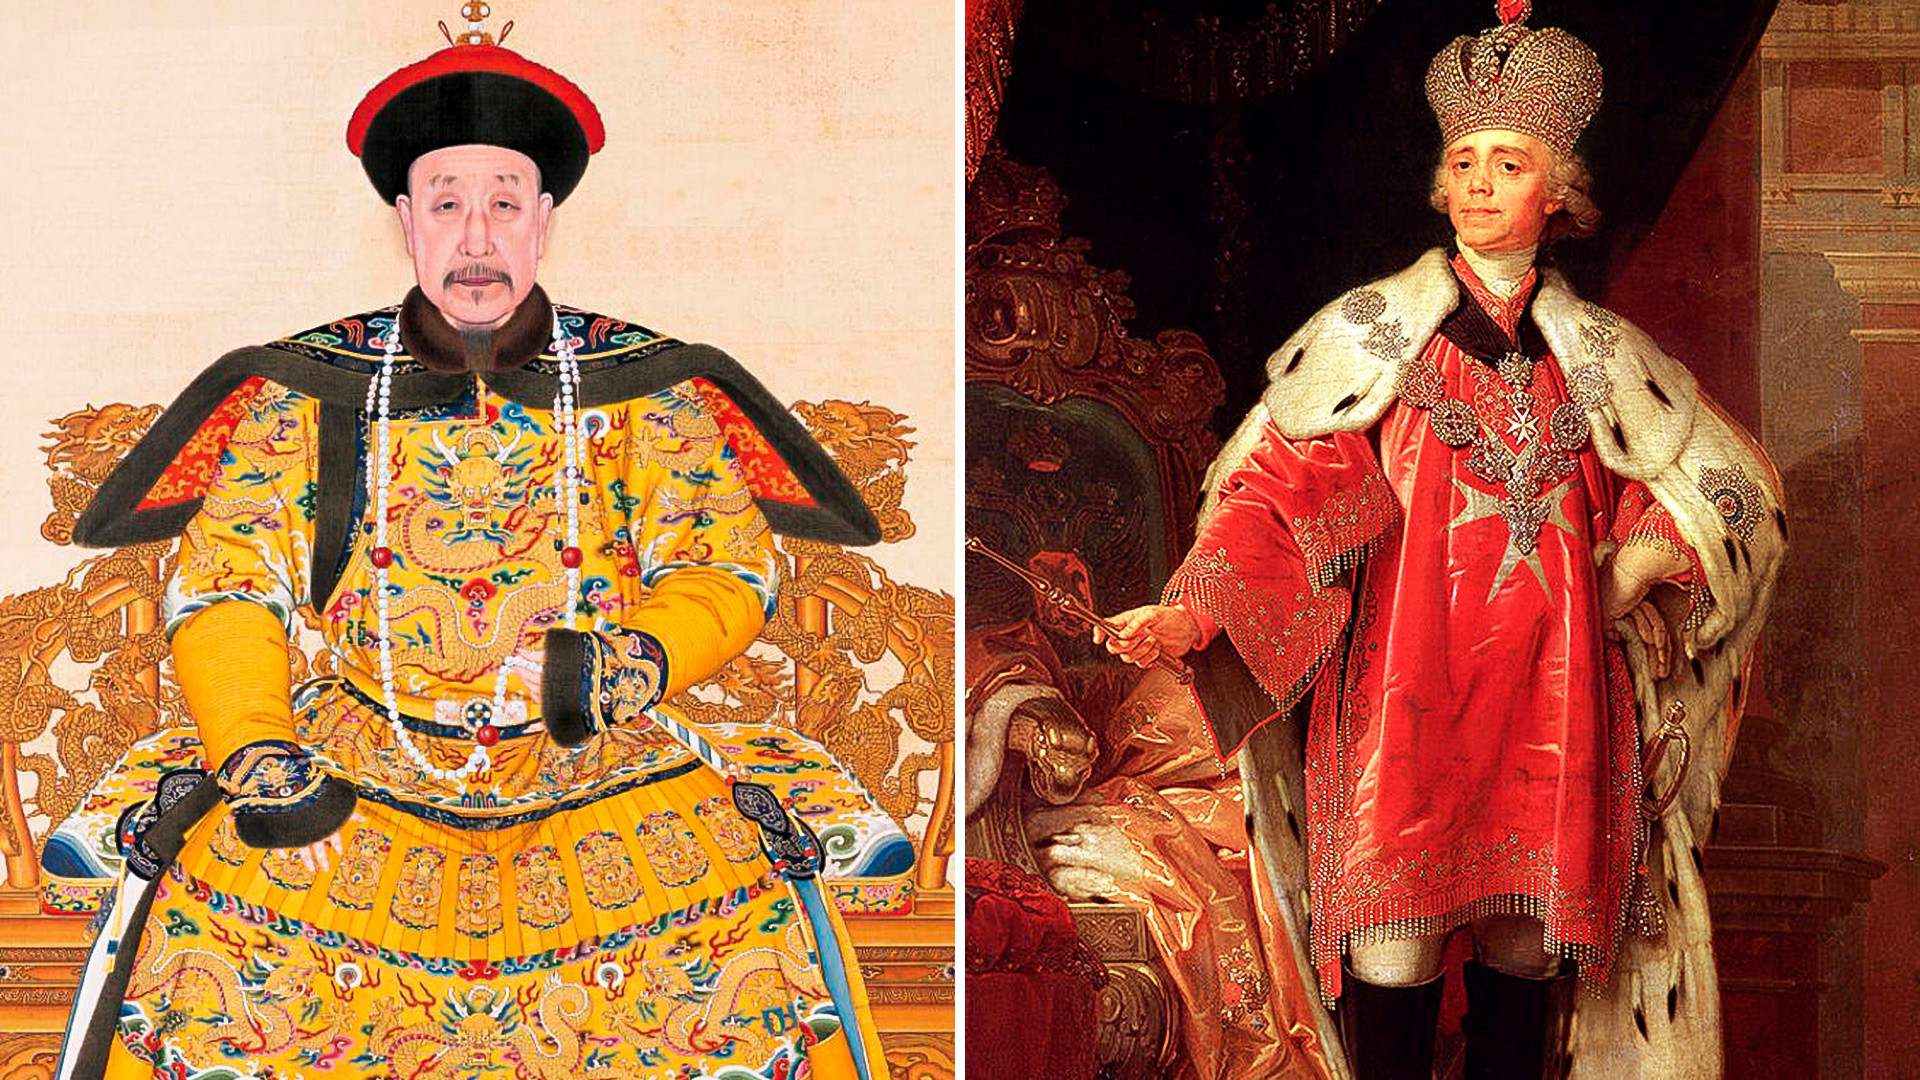 Lijevo: Portret cara Qianlonga u svečanoj odjeći. Dinastija Qing, vladavina Qianlonga (1736.–1796.) Desno: Portret Pavla I. u krunidbenoj odjeći